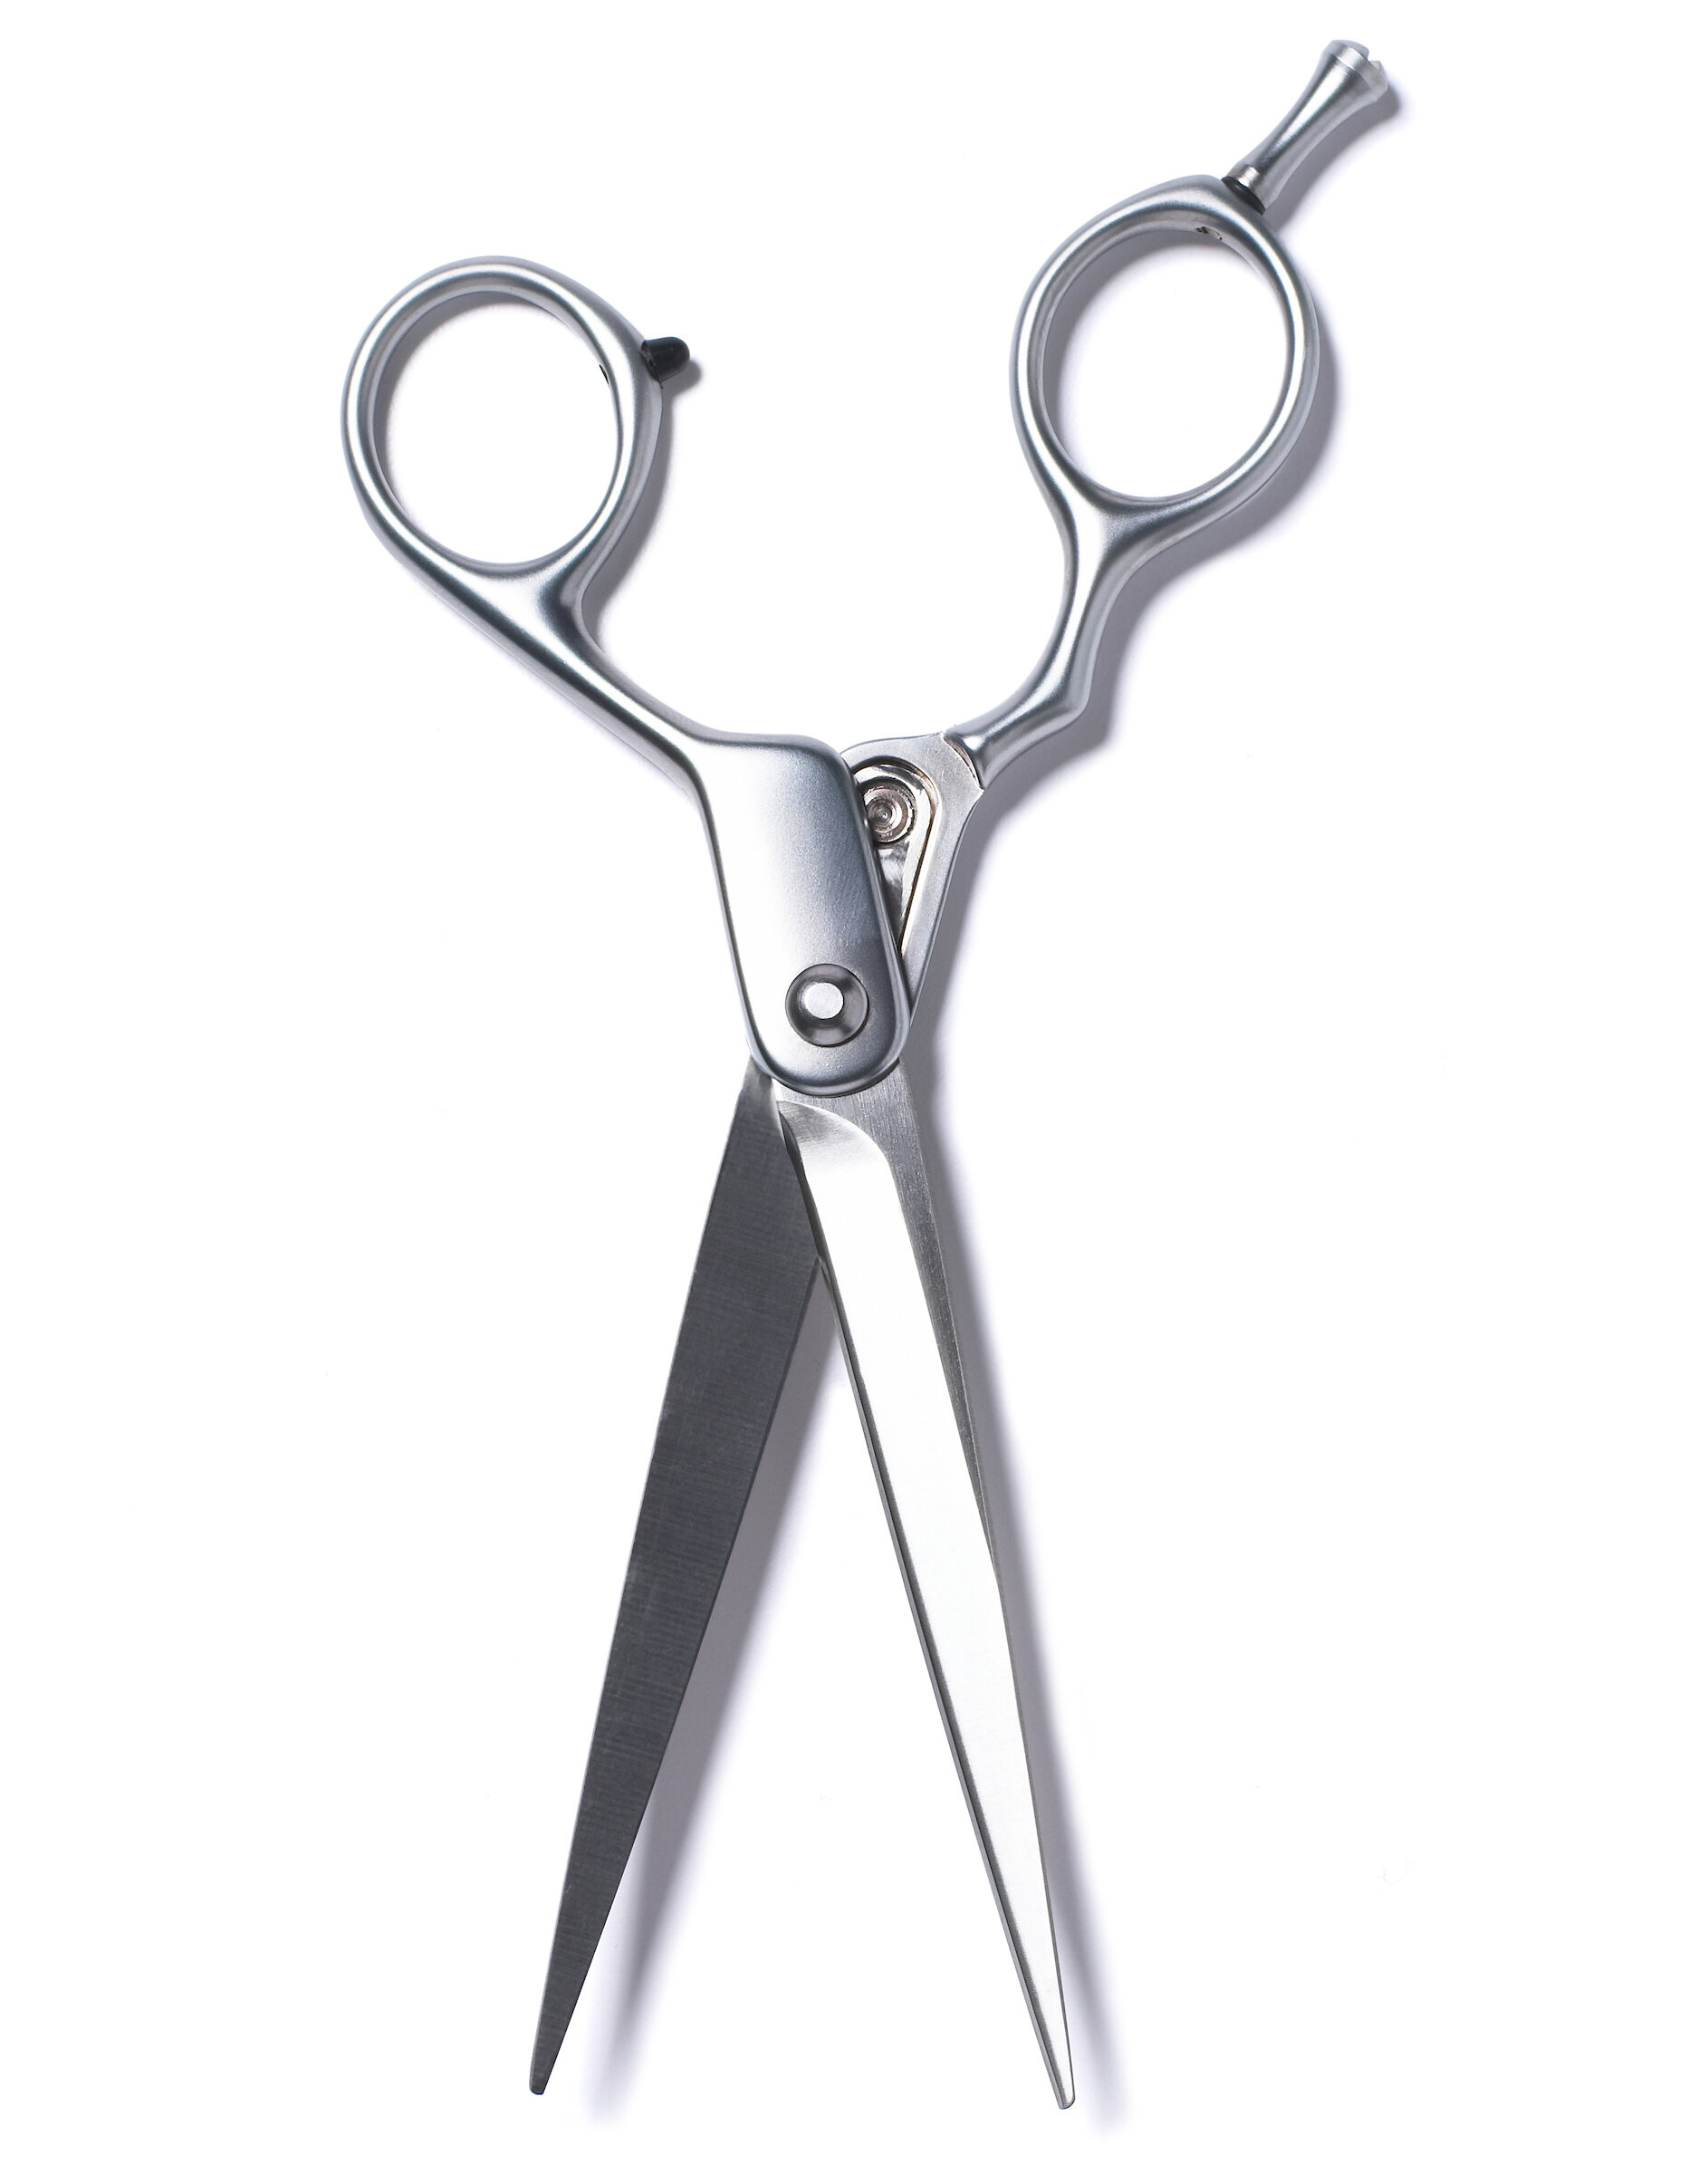 Hair cut scissors.jpg